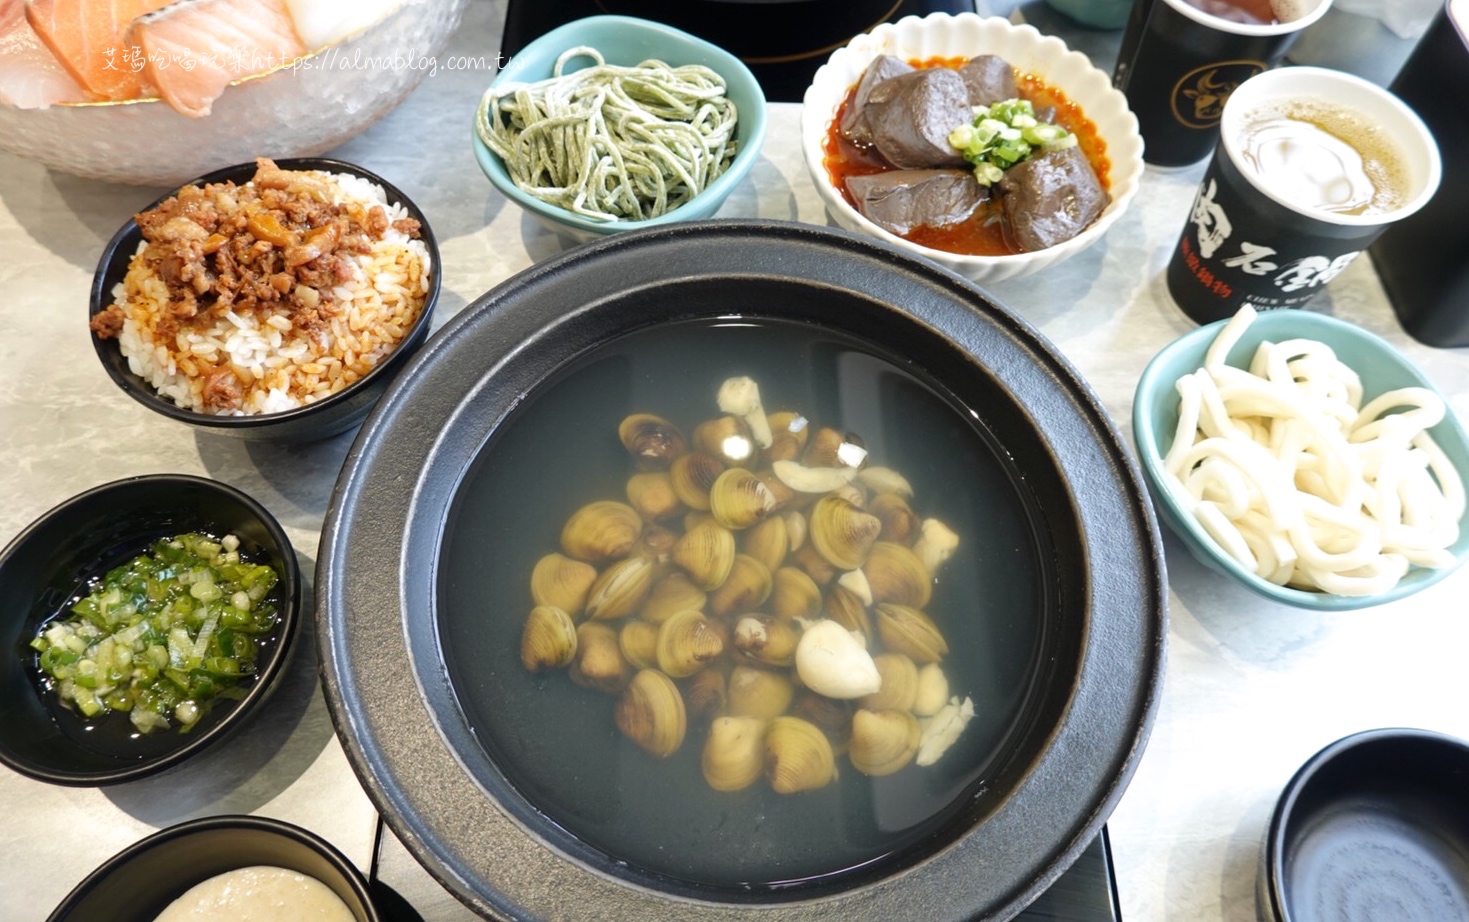 八德美食,嗑肉石鍋,桃園鍋物